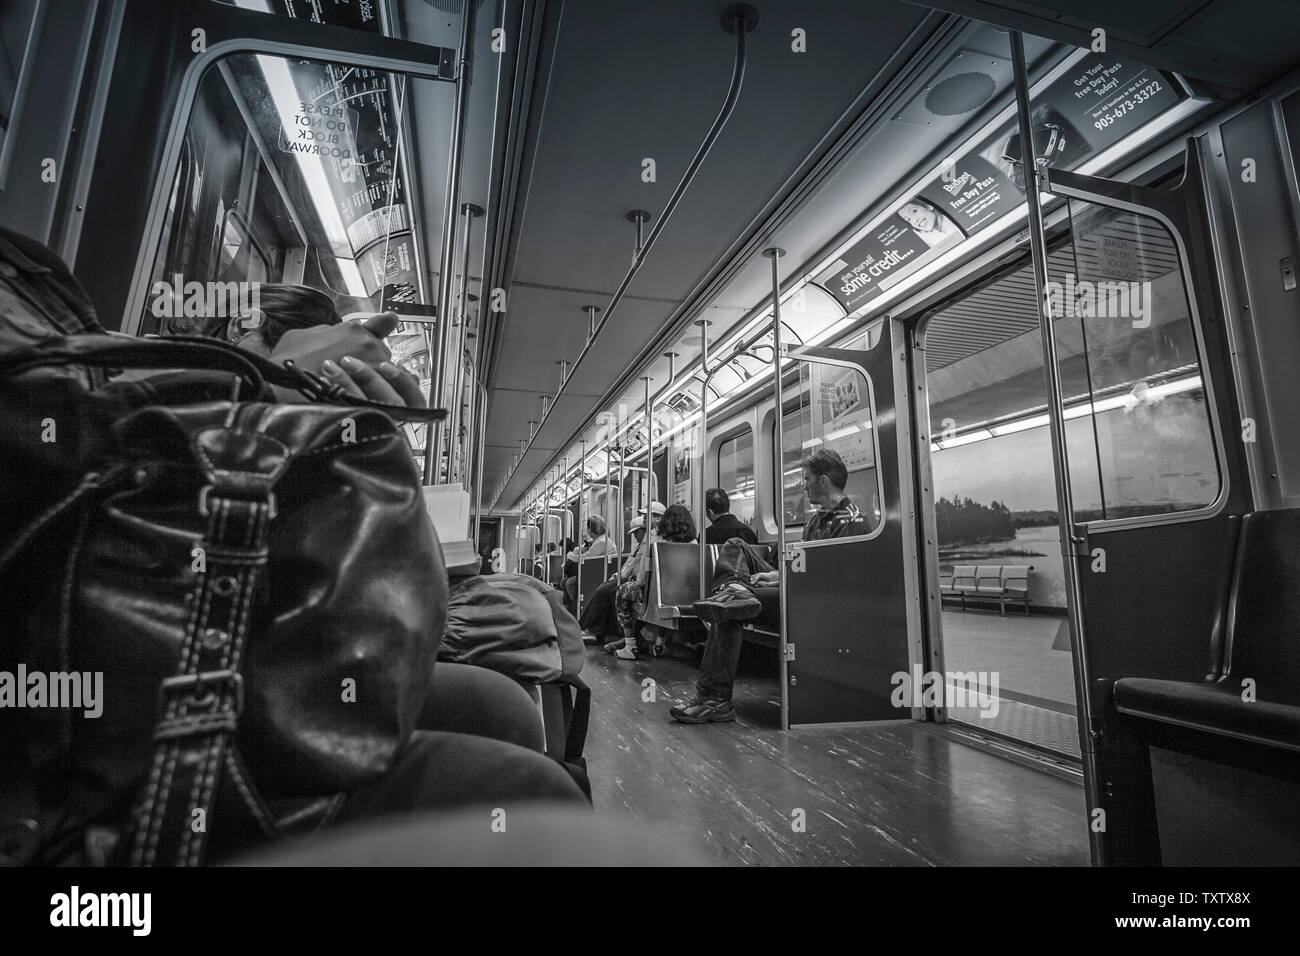 Toronto, Canada - all'interno di un treno della metropolitana con le porte aperte a un arresto. Foto Stock